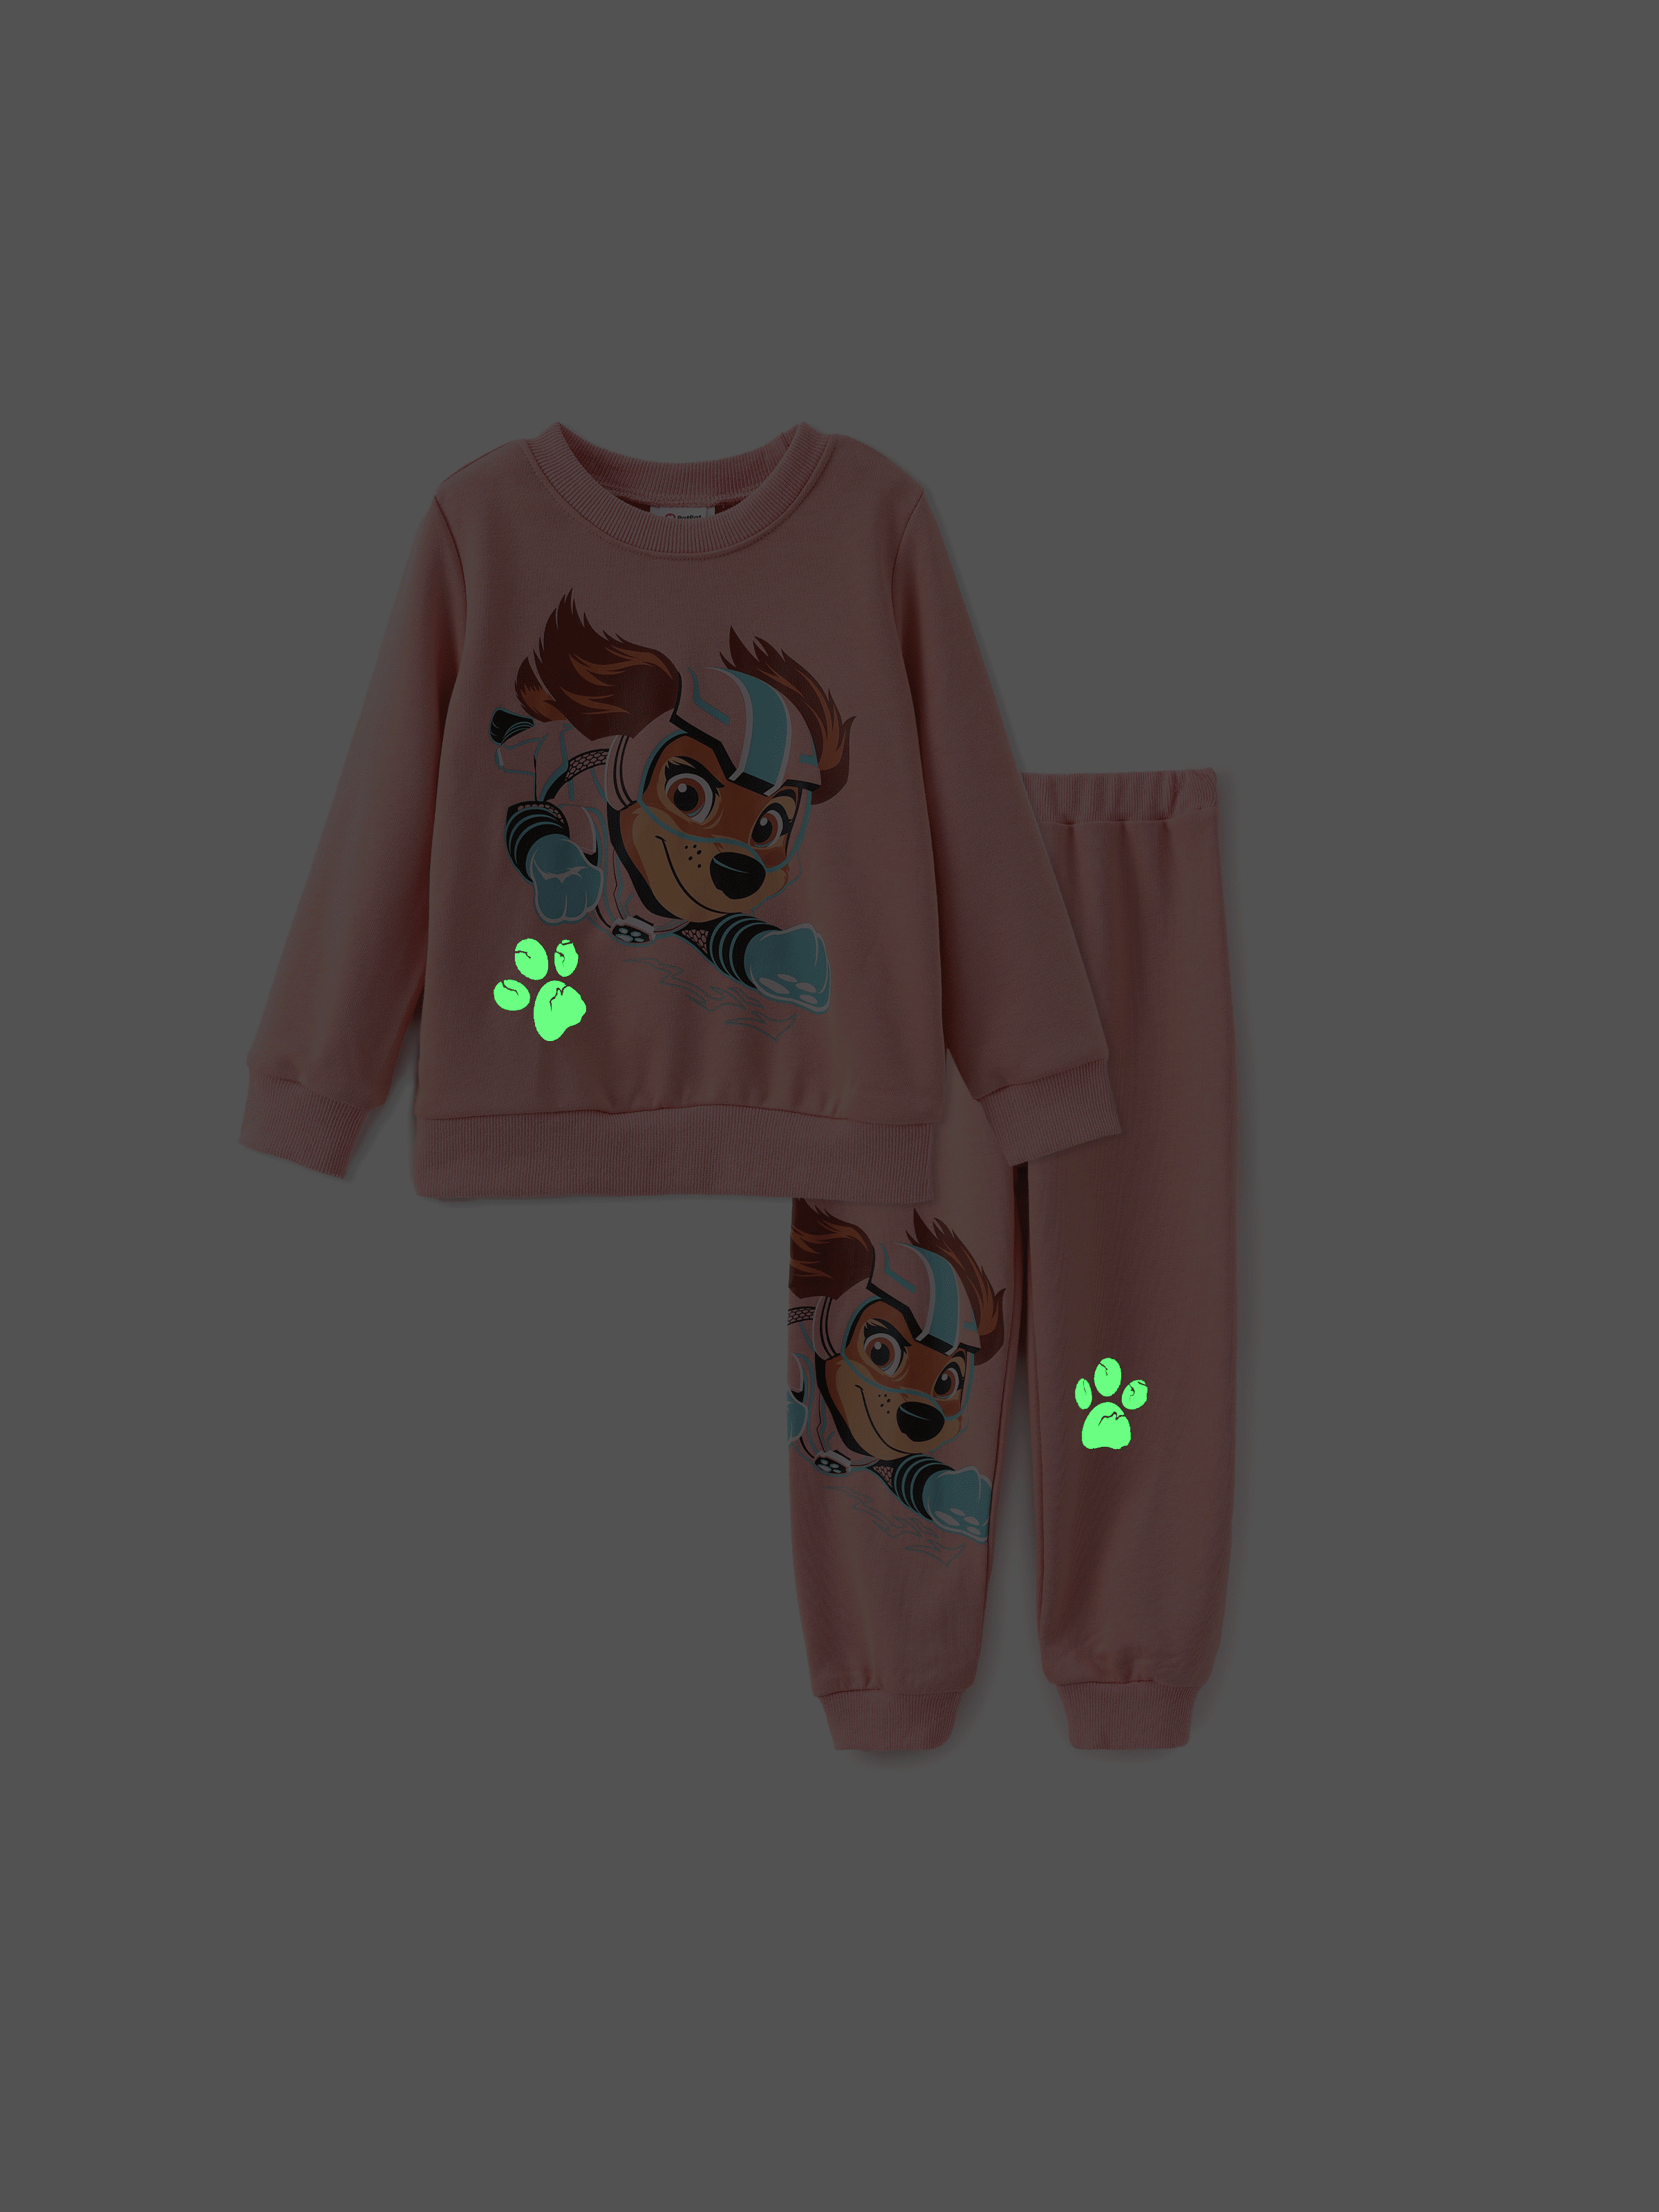 

Paw Patrol Toddler Boys/Girls 2pcs Glow in the Dark Sweatshirt and Pants Set